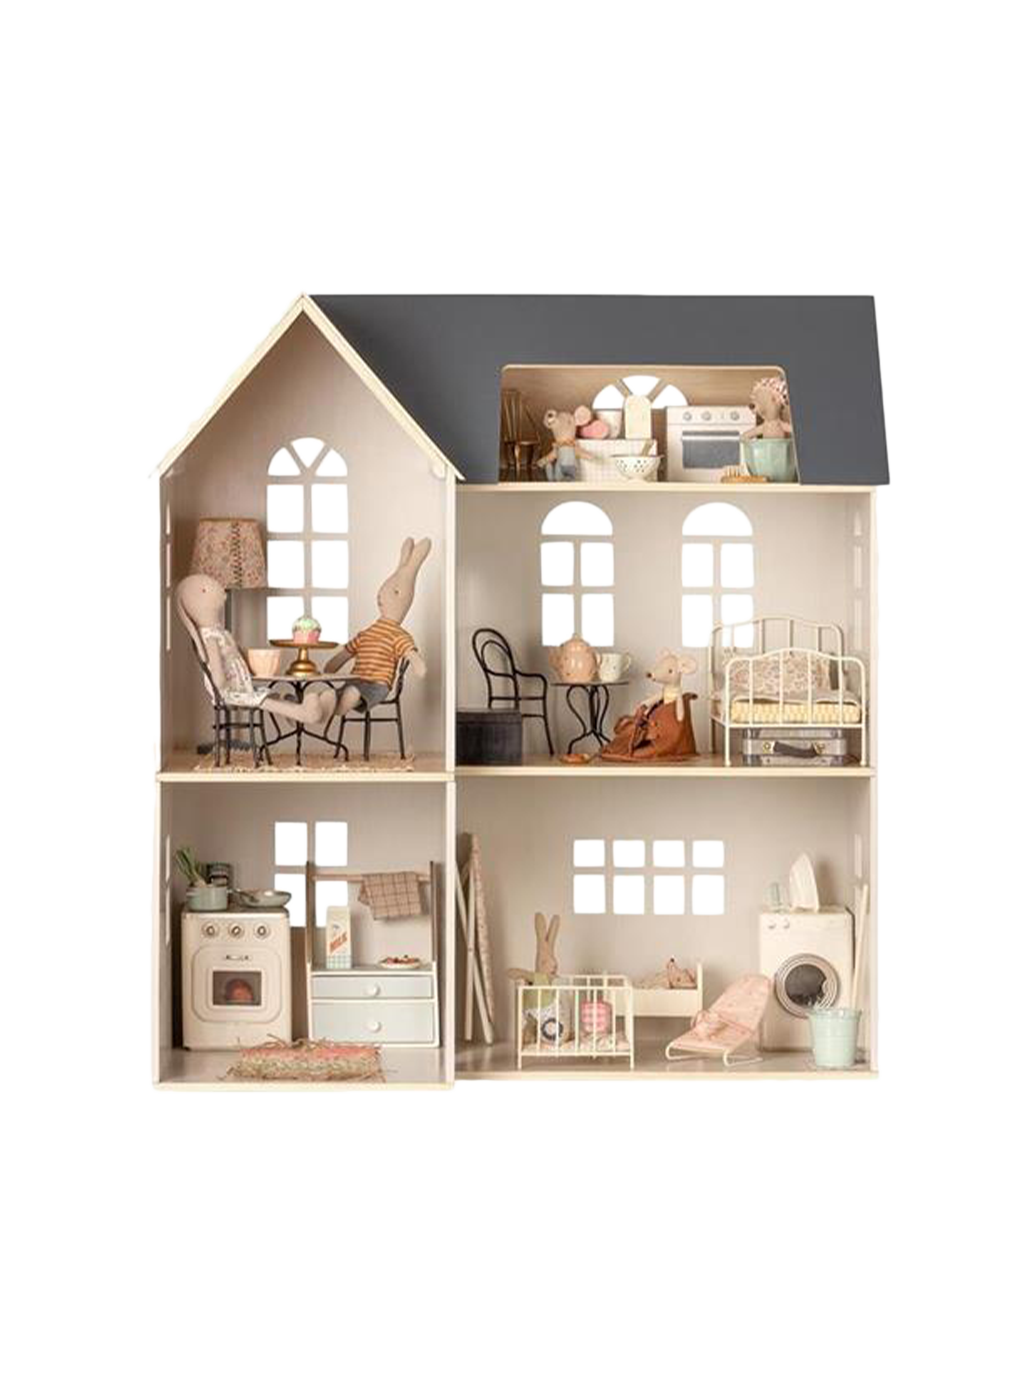 Casa in miniatura in legno 